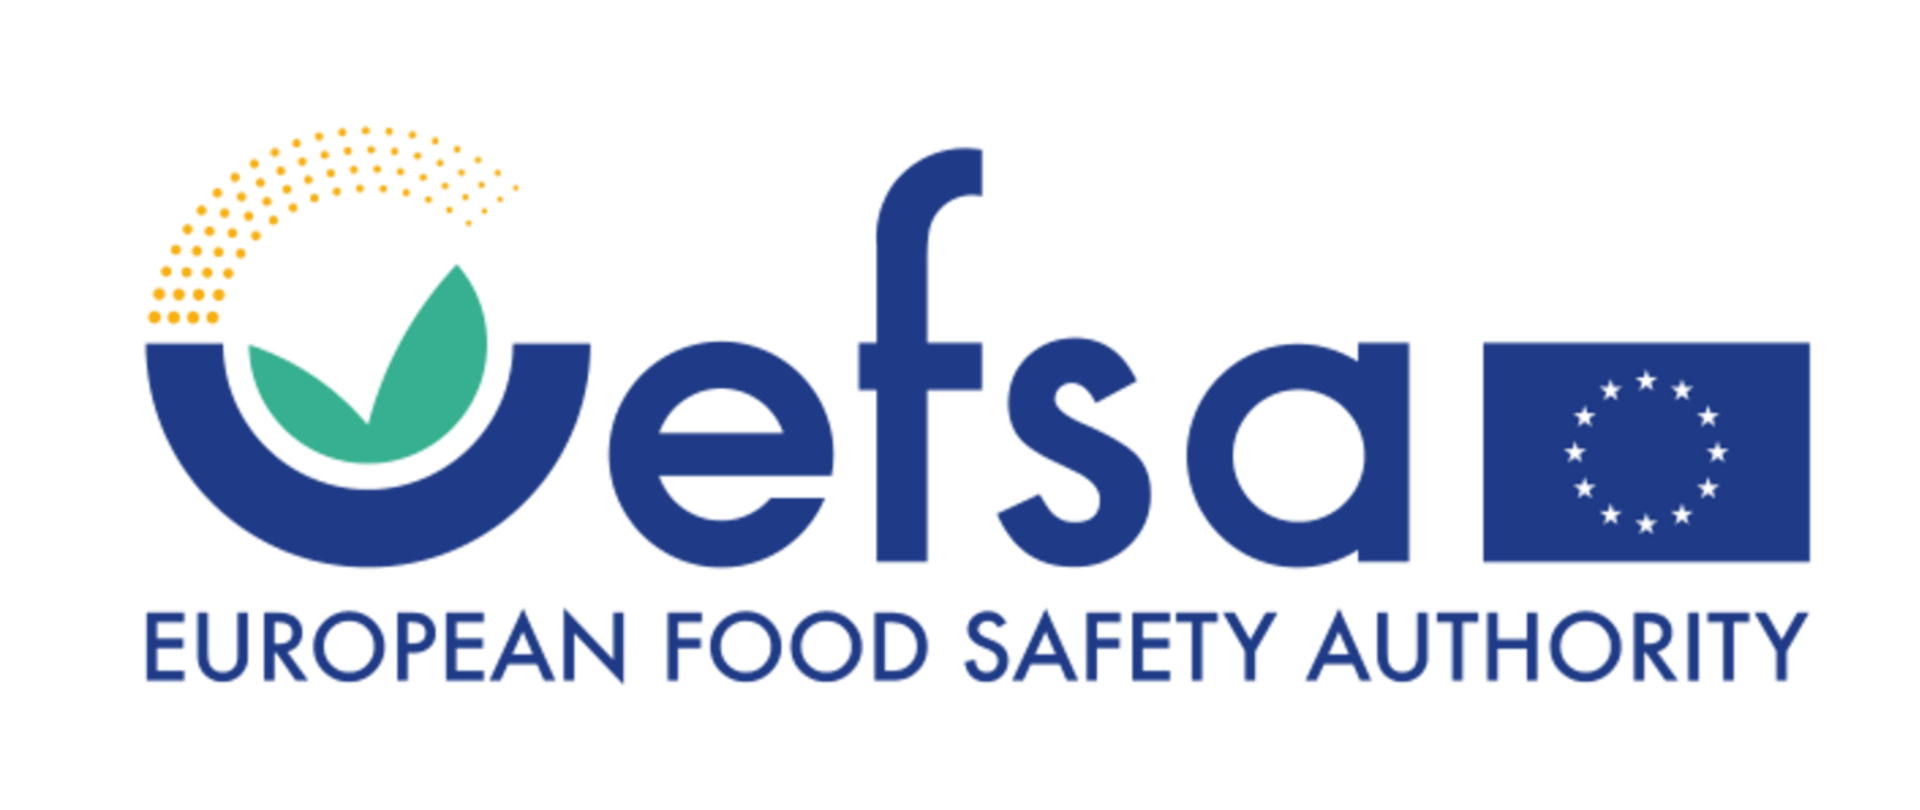 Rusza III edycja kampanii EFSA „Wybieraj bezpieczną żywność”